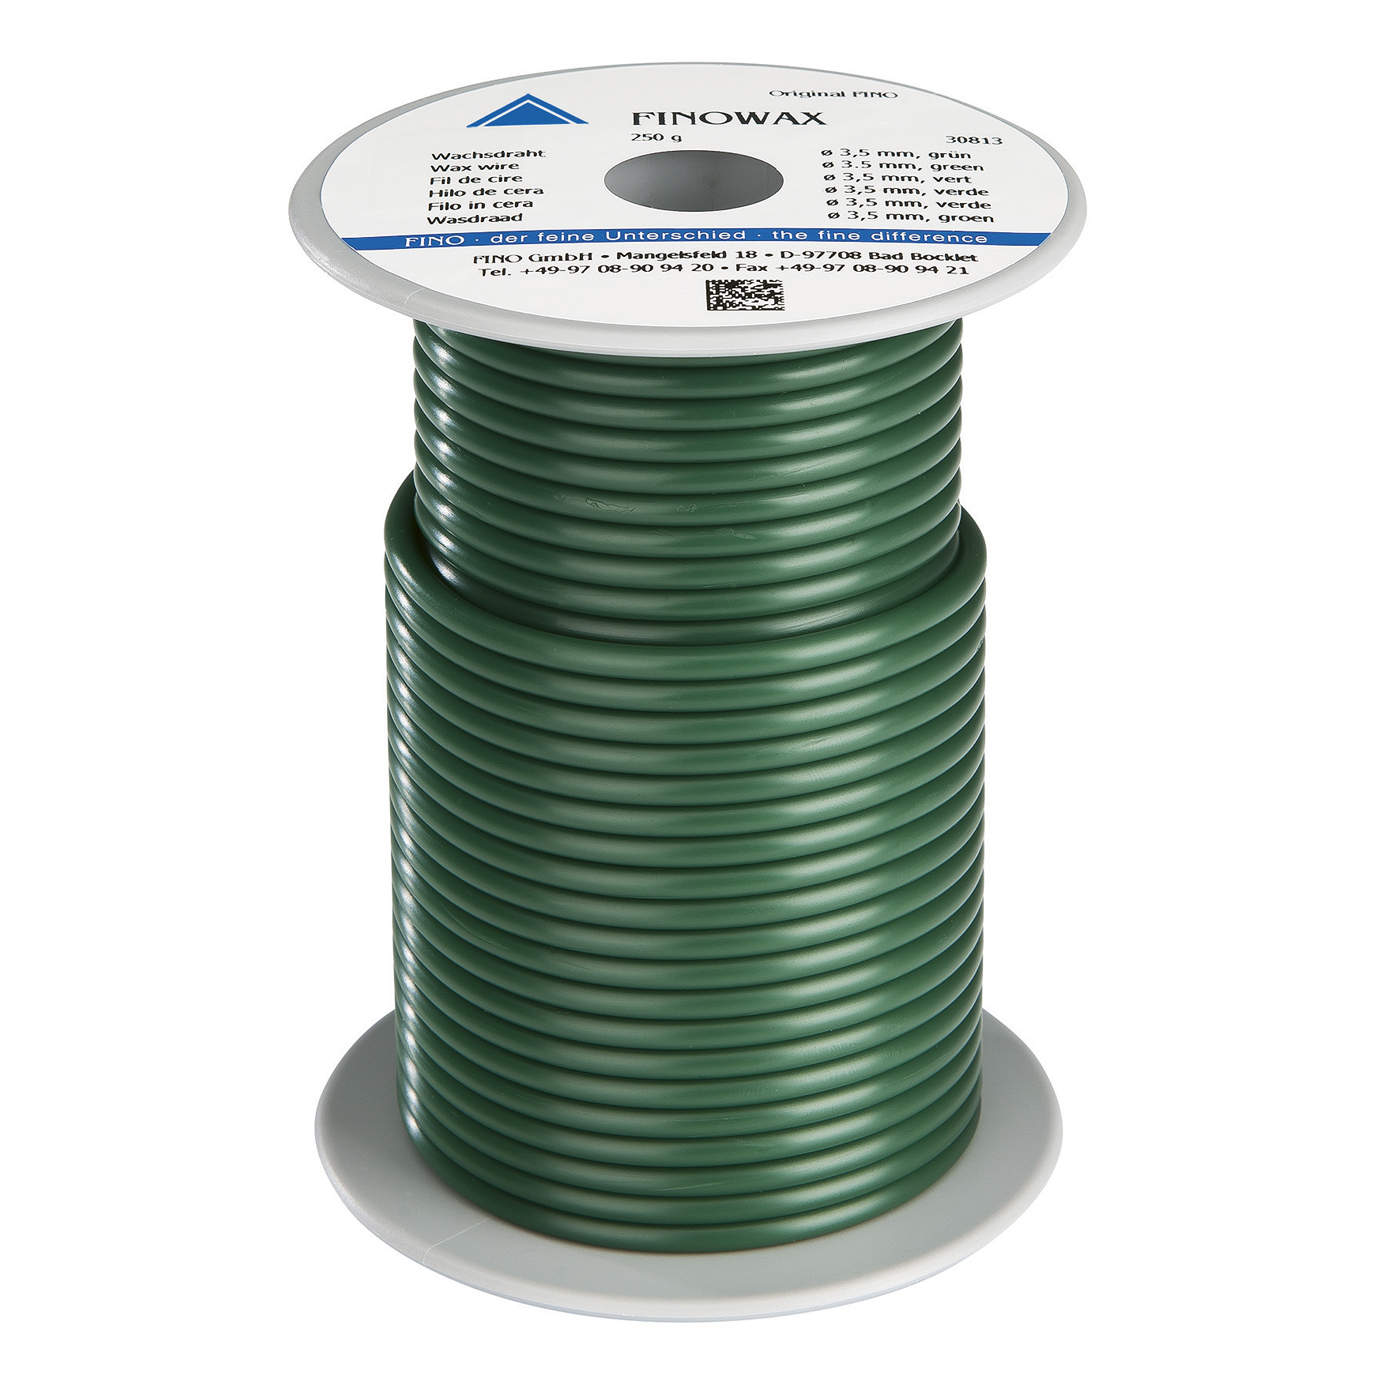 FINOWAX Wax Wire, ø 3.5 mm, Medium Hard, Green - 250 g